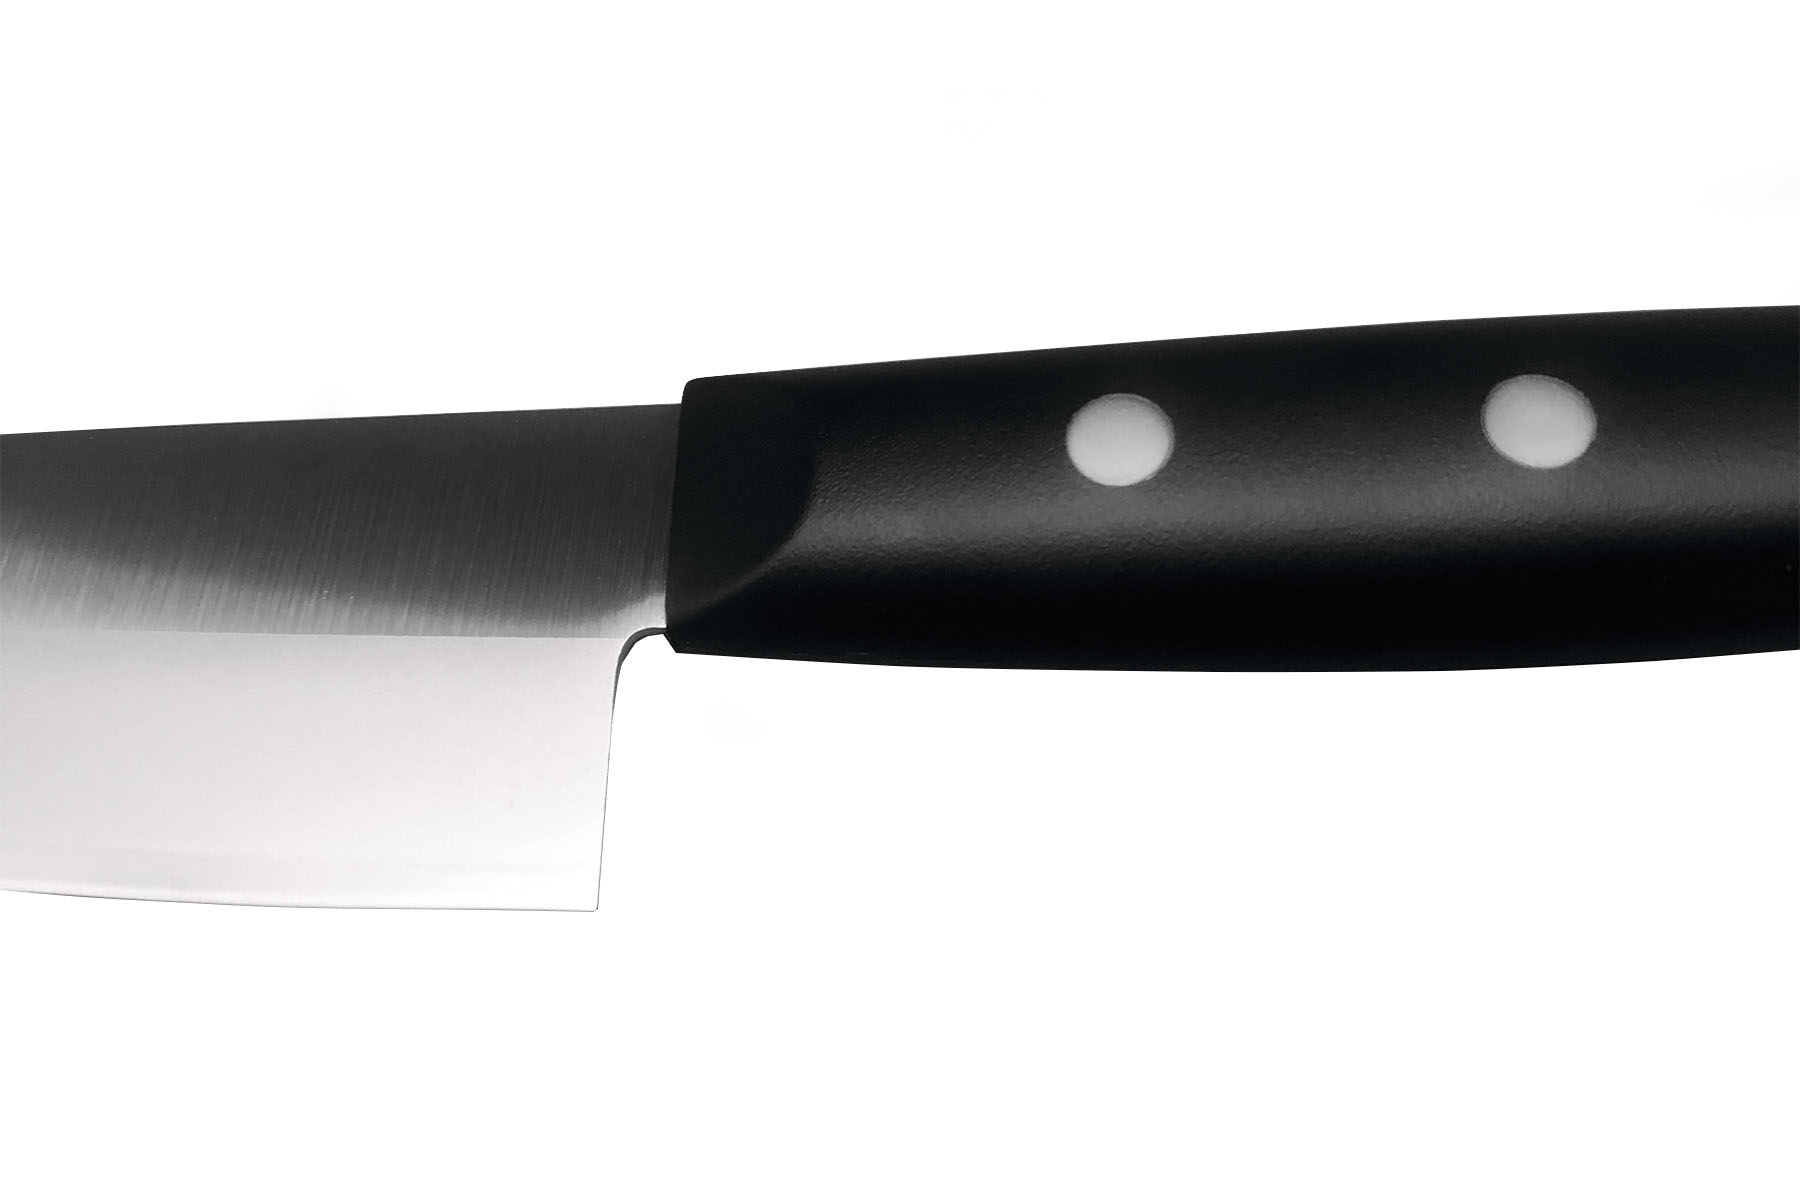 Couteau japonais Tojiro Dp Éco Santoku 14 cm